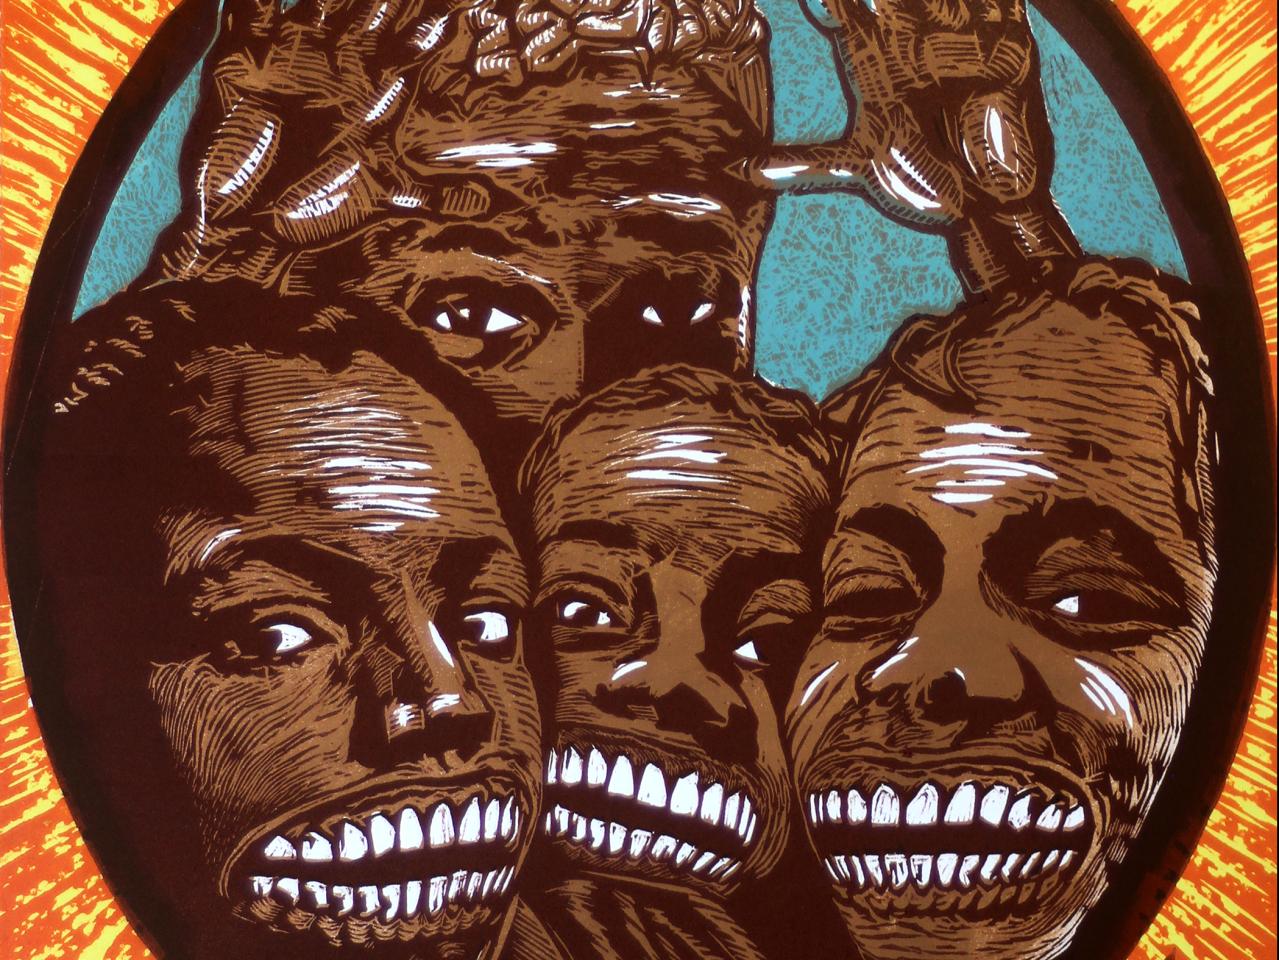 Grabado que representa los rostros de un grupo de jóvenes afrodescendientes